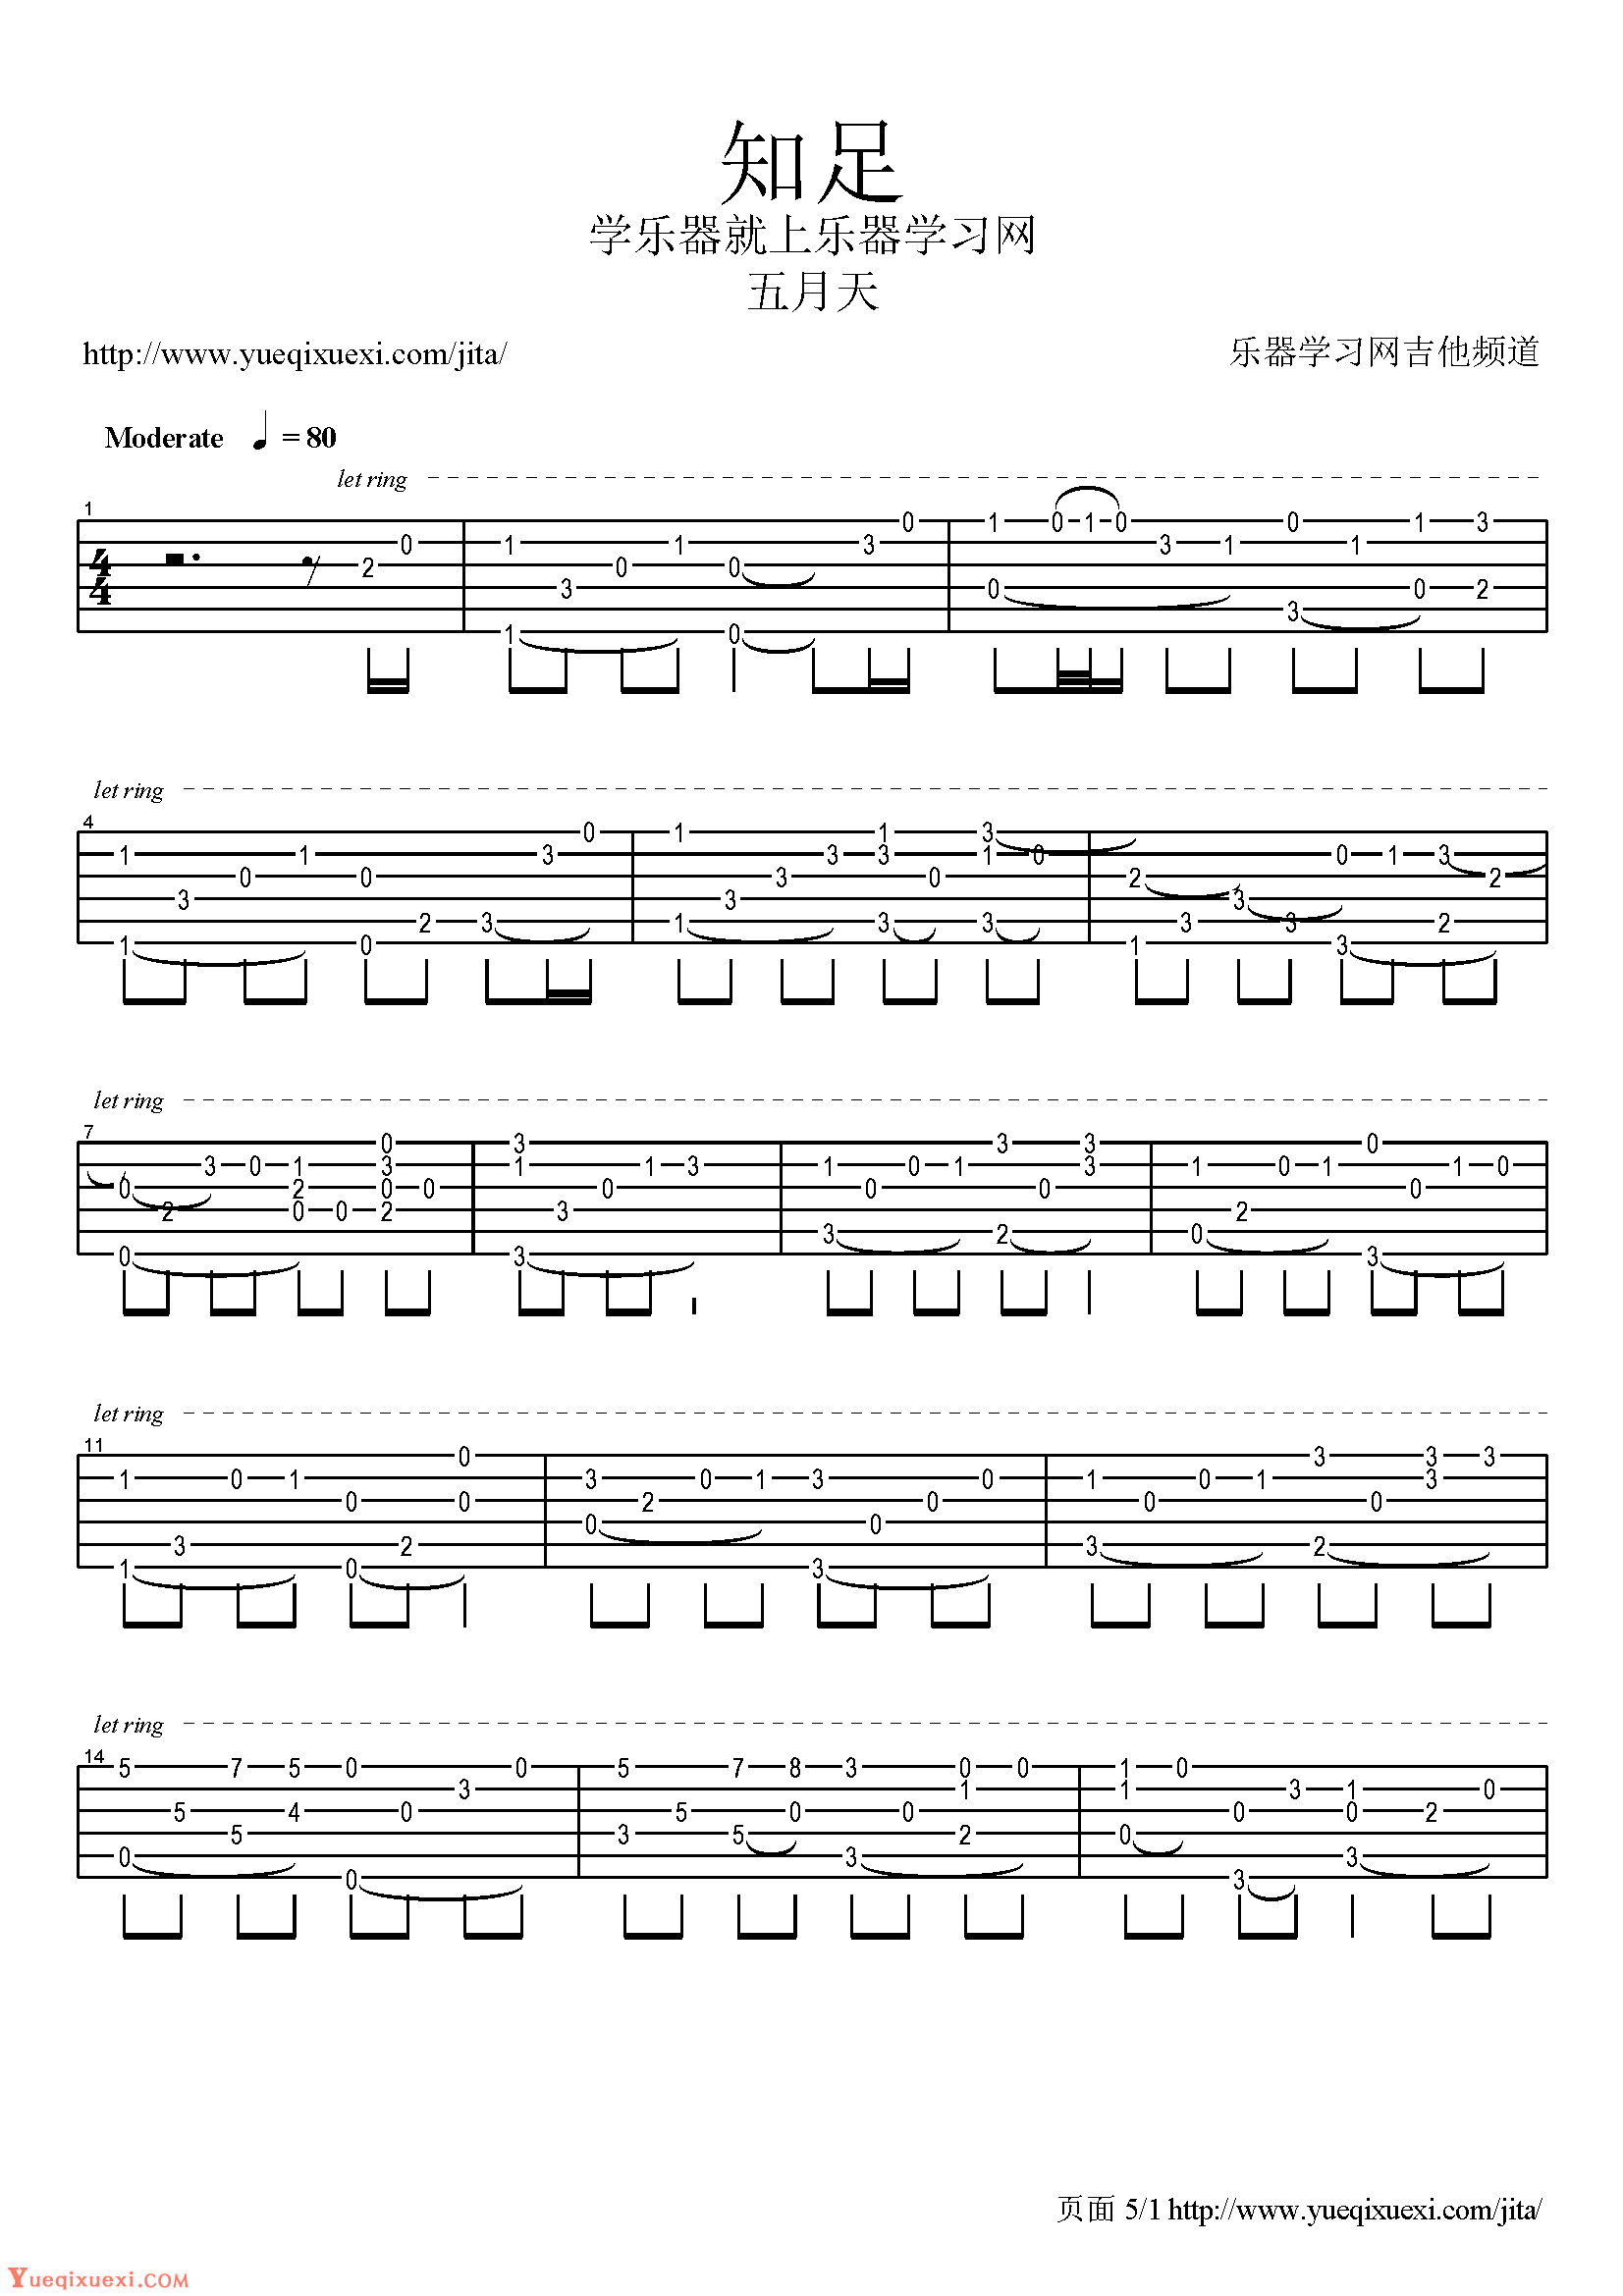 ★ 五月天-转眼 小提琴谱pdf-香港流行钢琴协会琴谱下载 ★